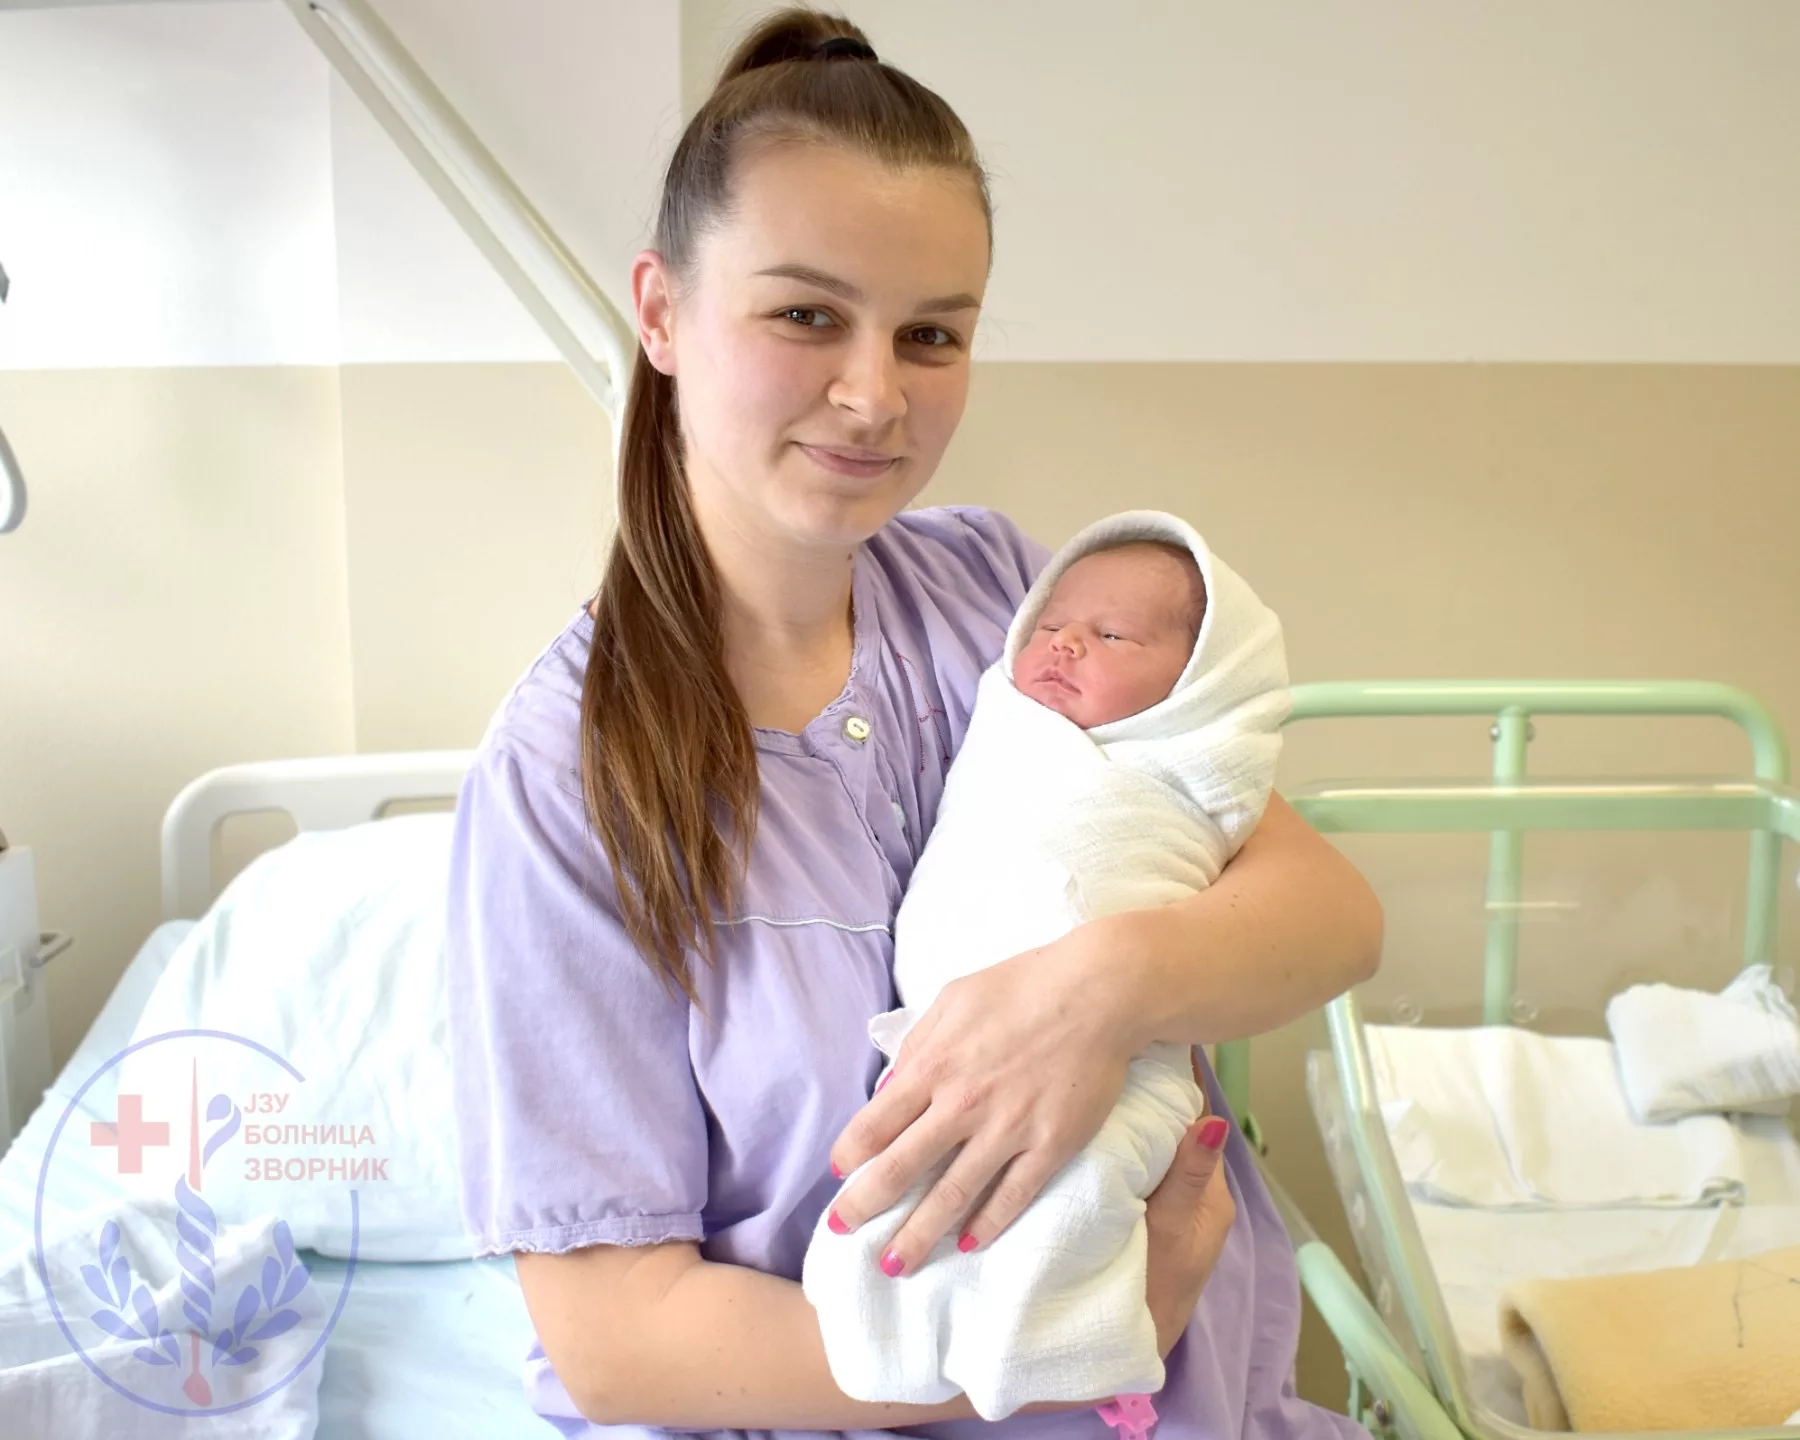 Sedam beba za dva dana u porodilištu zvorničke bolnice (FOTO)